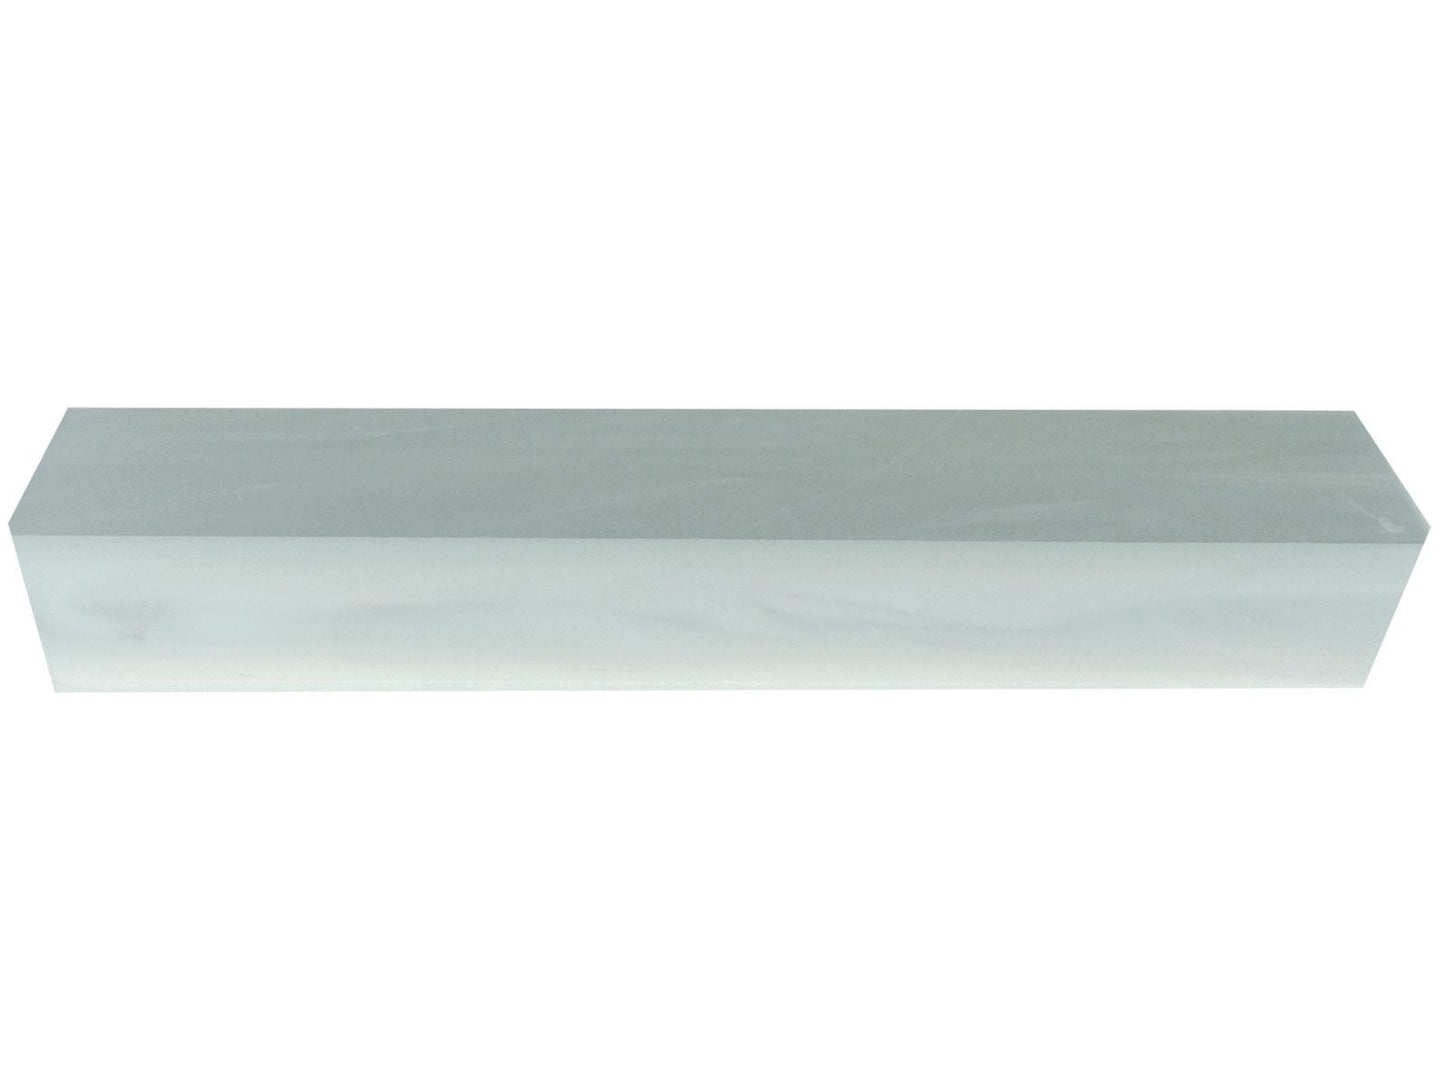 Turners' Mill White Pearl Kirinite Acrylic Pen Blank - 150x20x20mm (5.9x0.79x0.79"), 6x3/4x3/4"